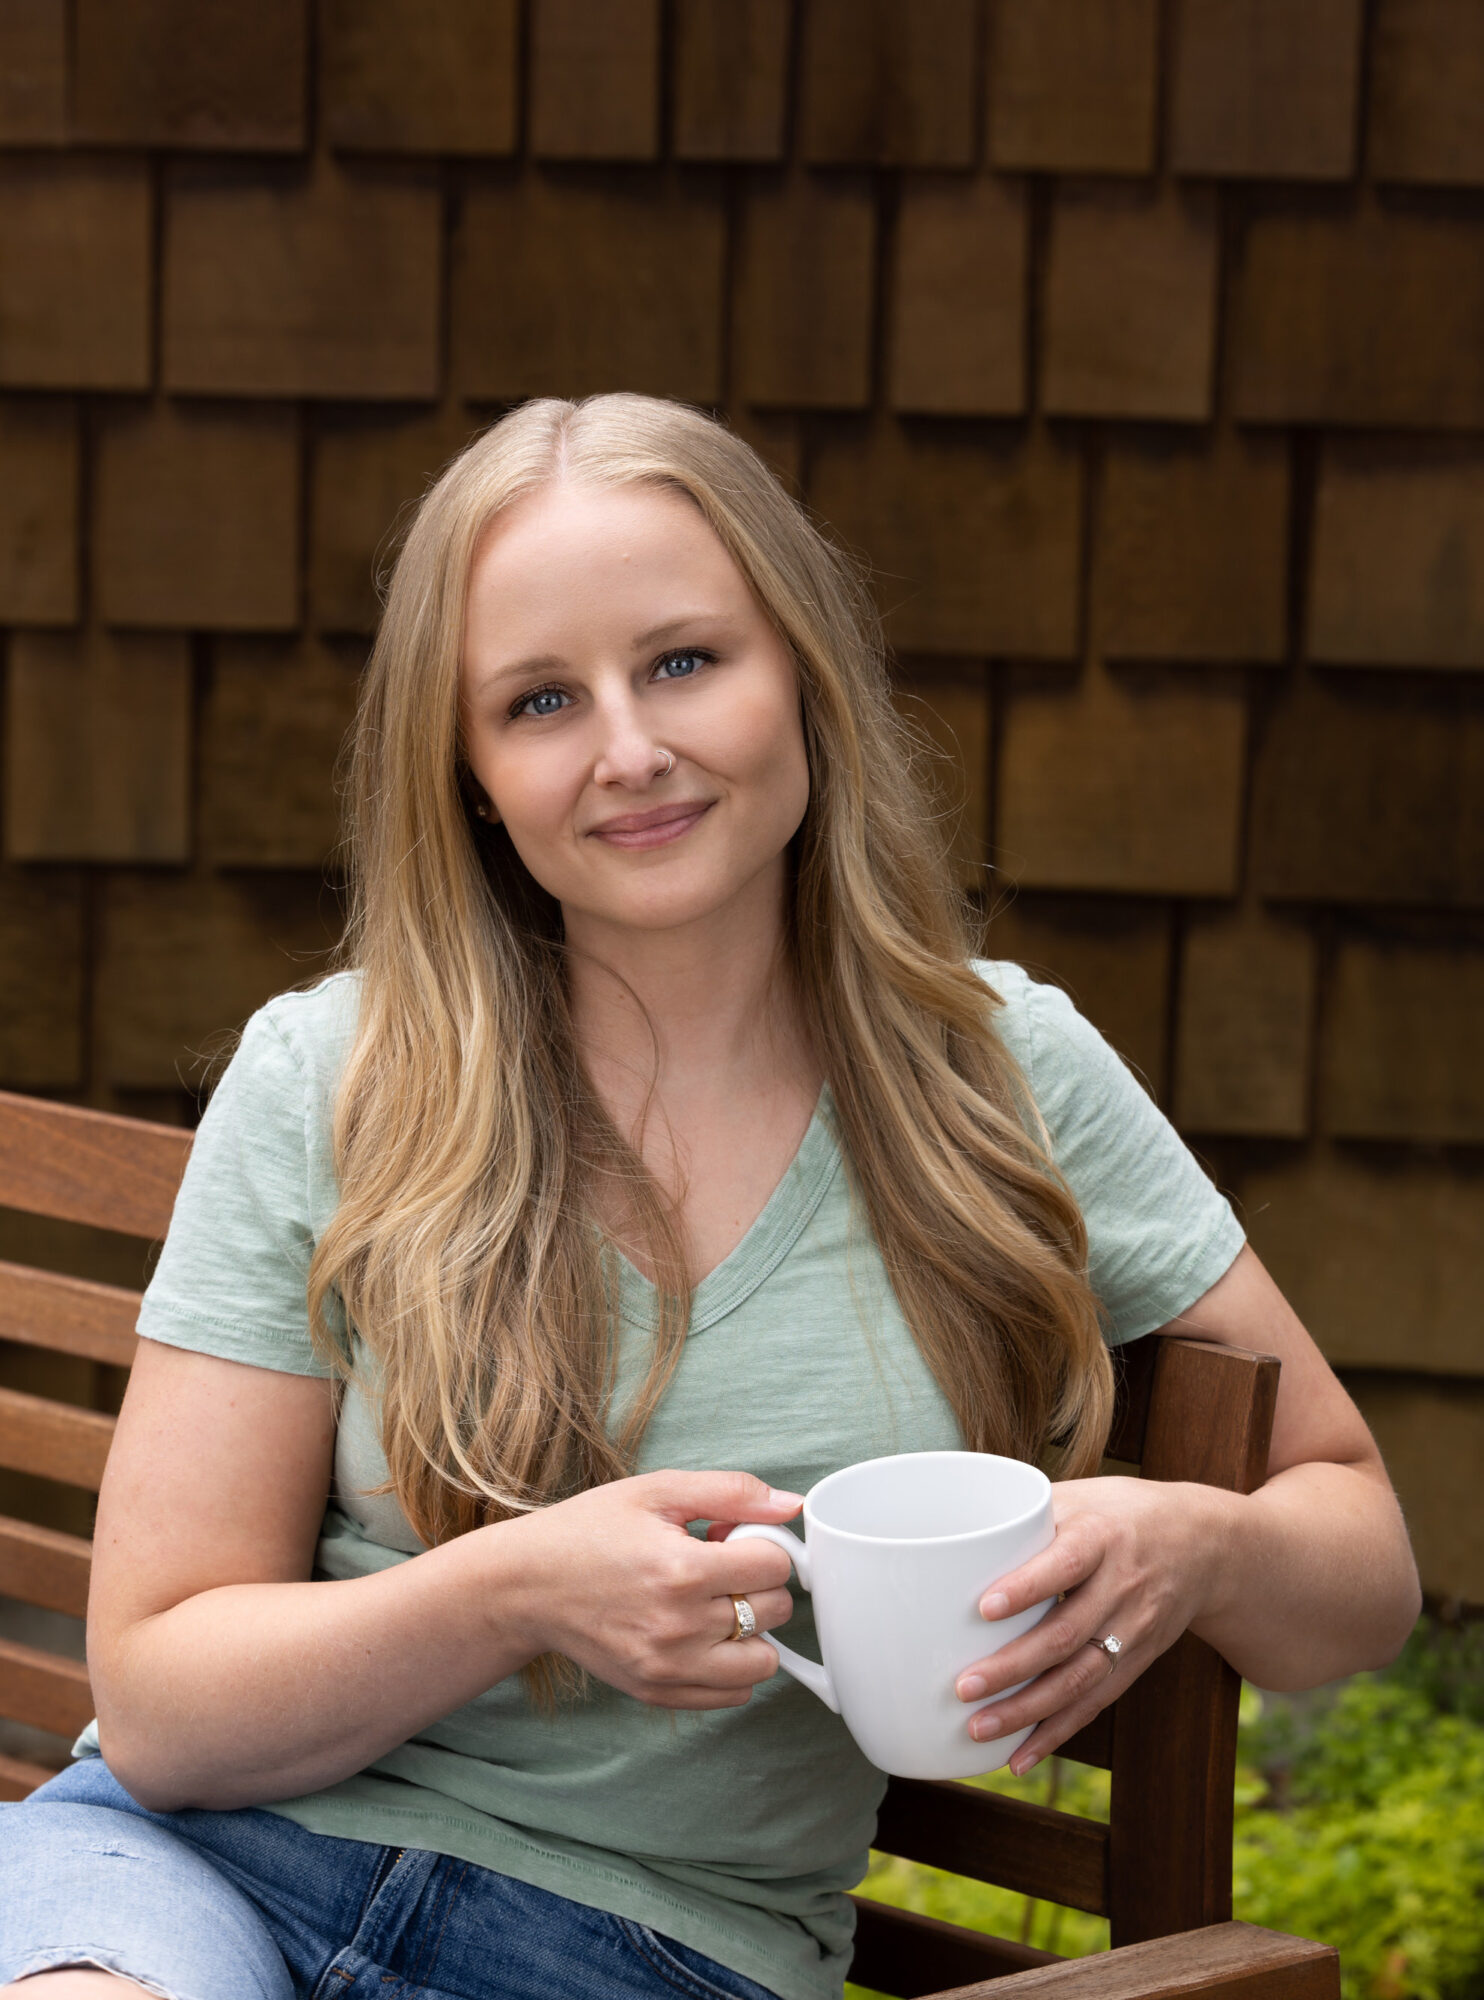 Membro do Empowered Voices vestindo uma camiseta verde clara com decote em V, sentado em um banco de ripas de madeira marrom, segurando uma xícara de café branca com uma parede de cedro marrom escuro ao fundo.